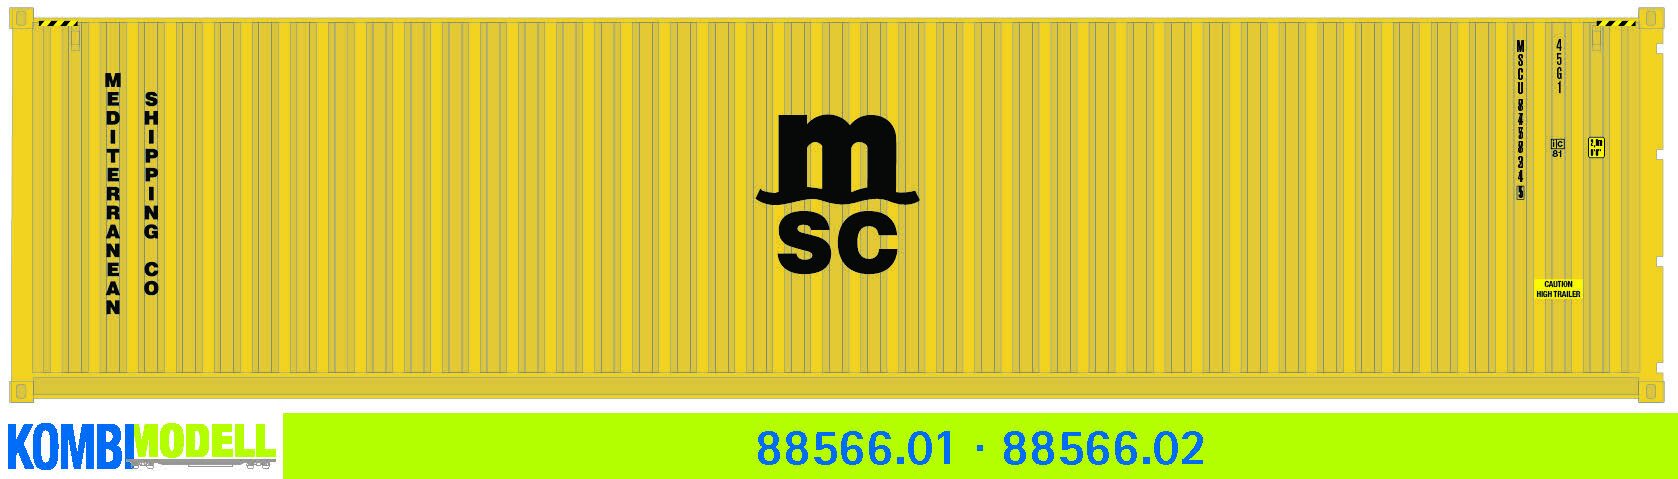 Kombimodell 88566.02 Ct 40' (45G1) »MSC« (gelb) ═ SoSe 